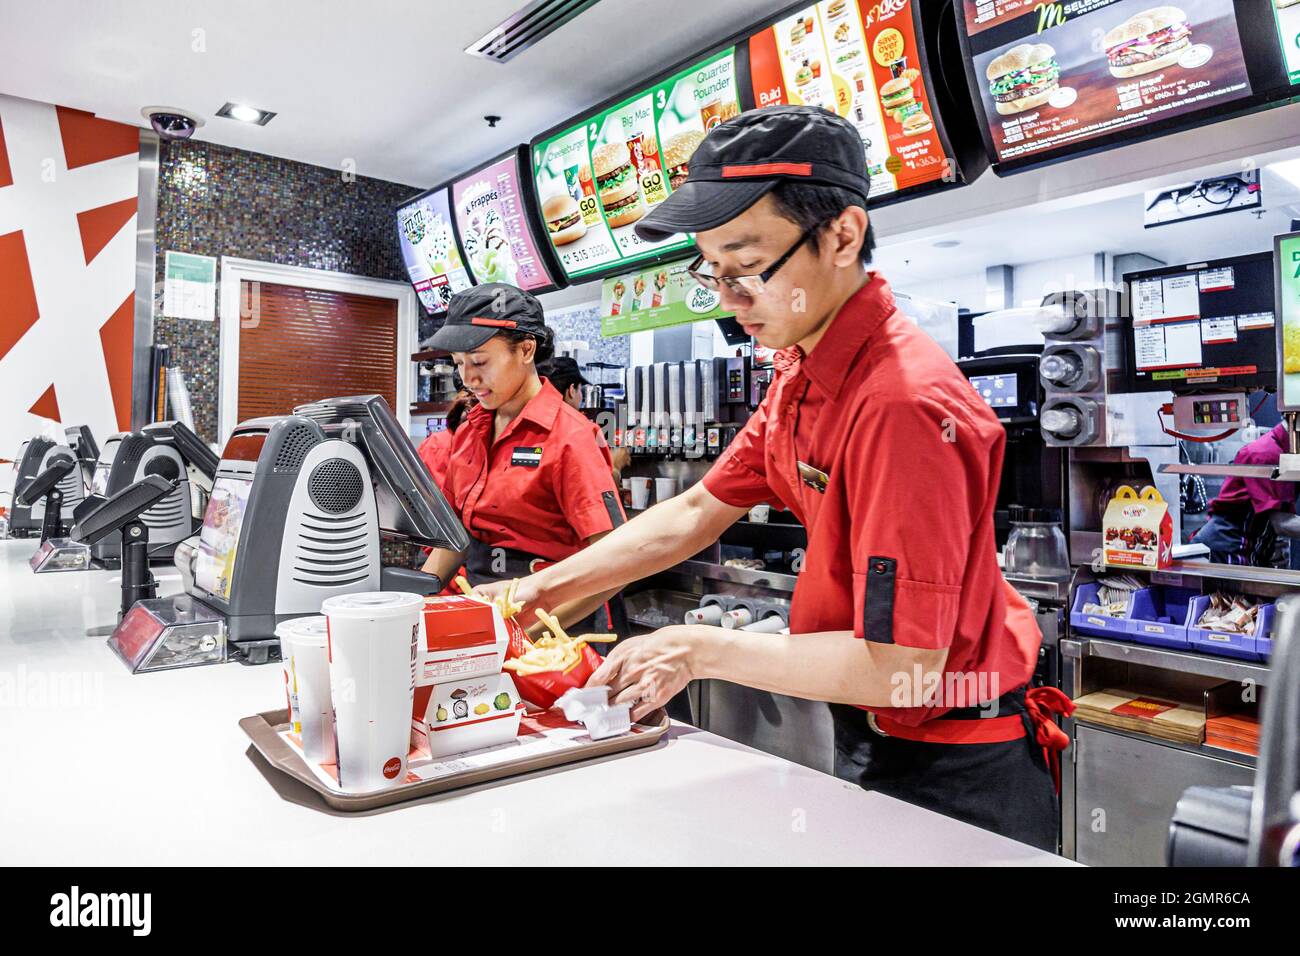 Sydney Australien, Circular Quay, McDonald's Restaurant Fast-Food-Theke asiatischer Mann, Angestellte, die bei der Vorbereitung der Ordnung Uniform Schwarze Frau arbeiten Stockfoto